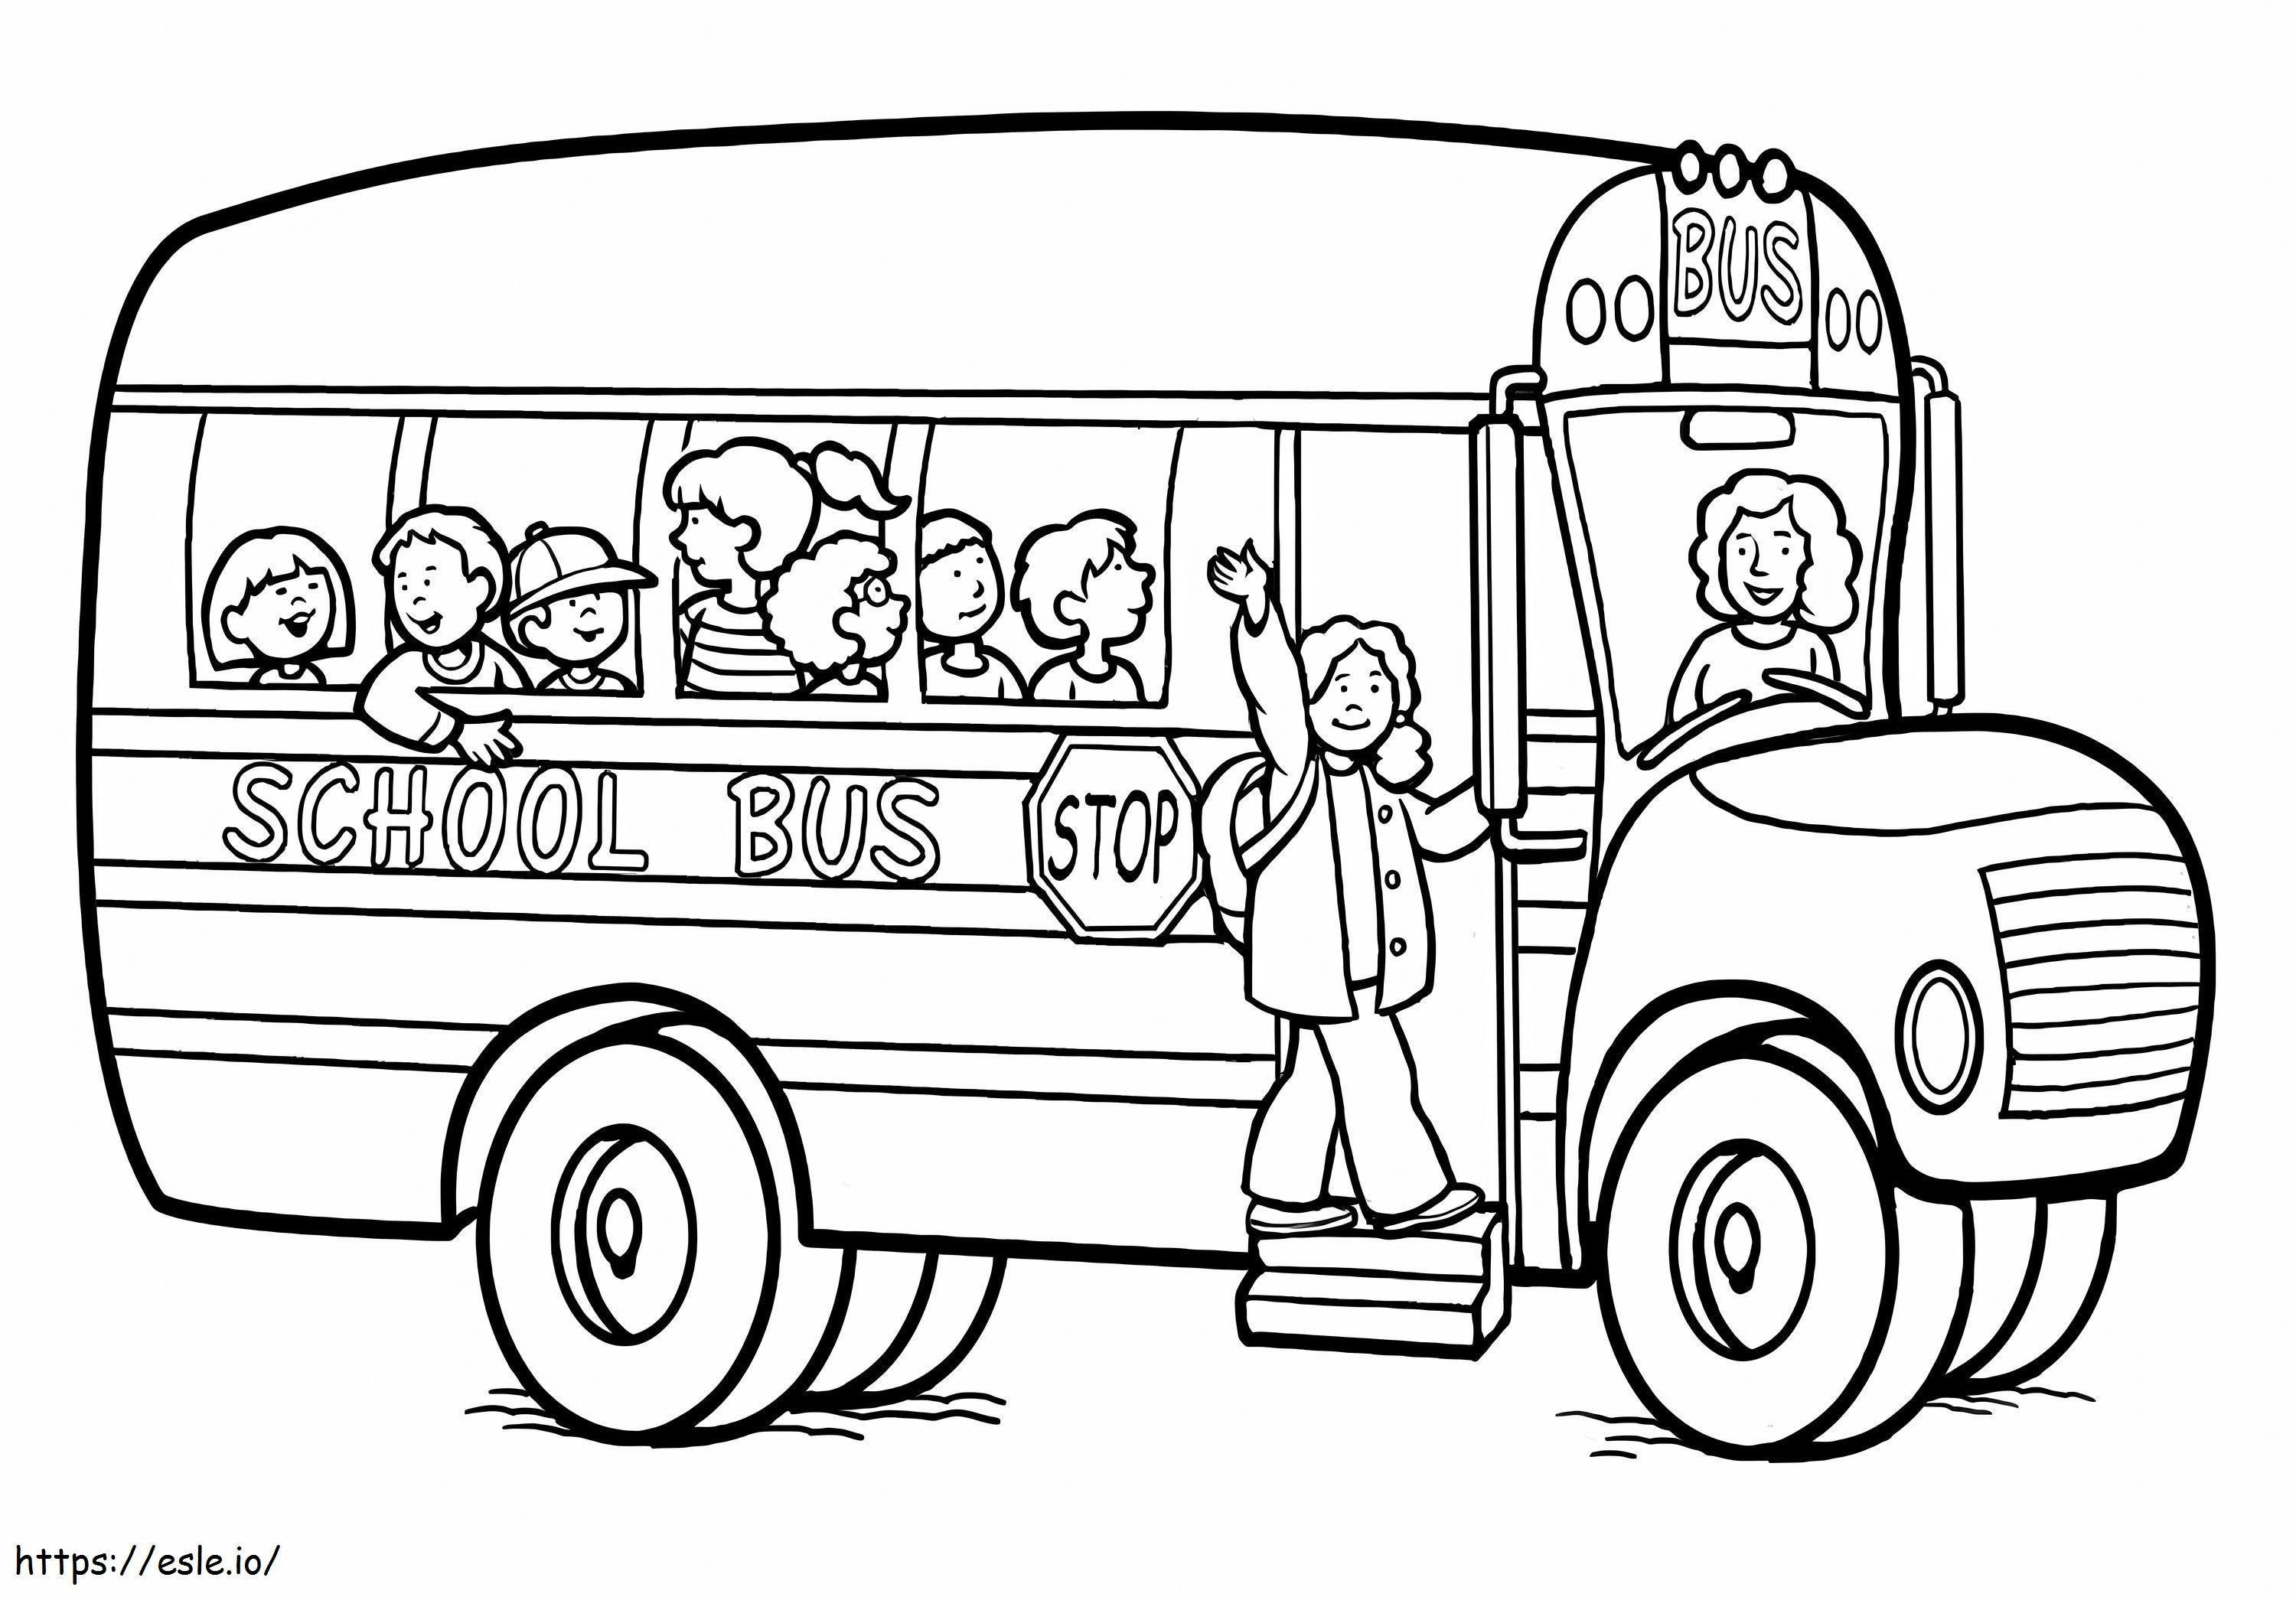 Okul Otobüsü Üzerindeki Öğrenciler Ölçeklendi boyama